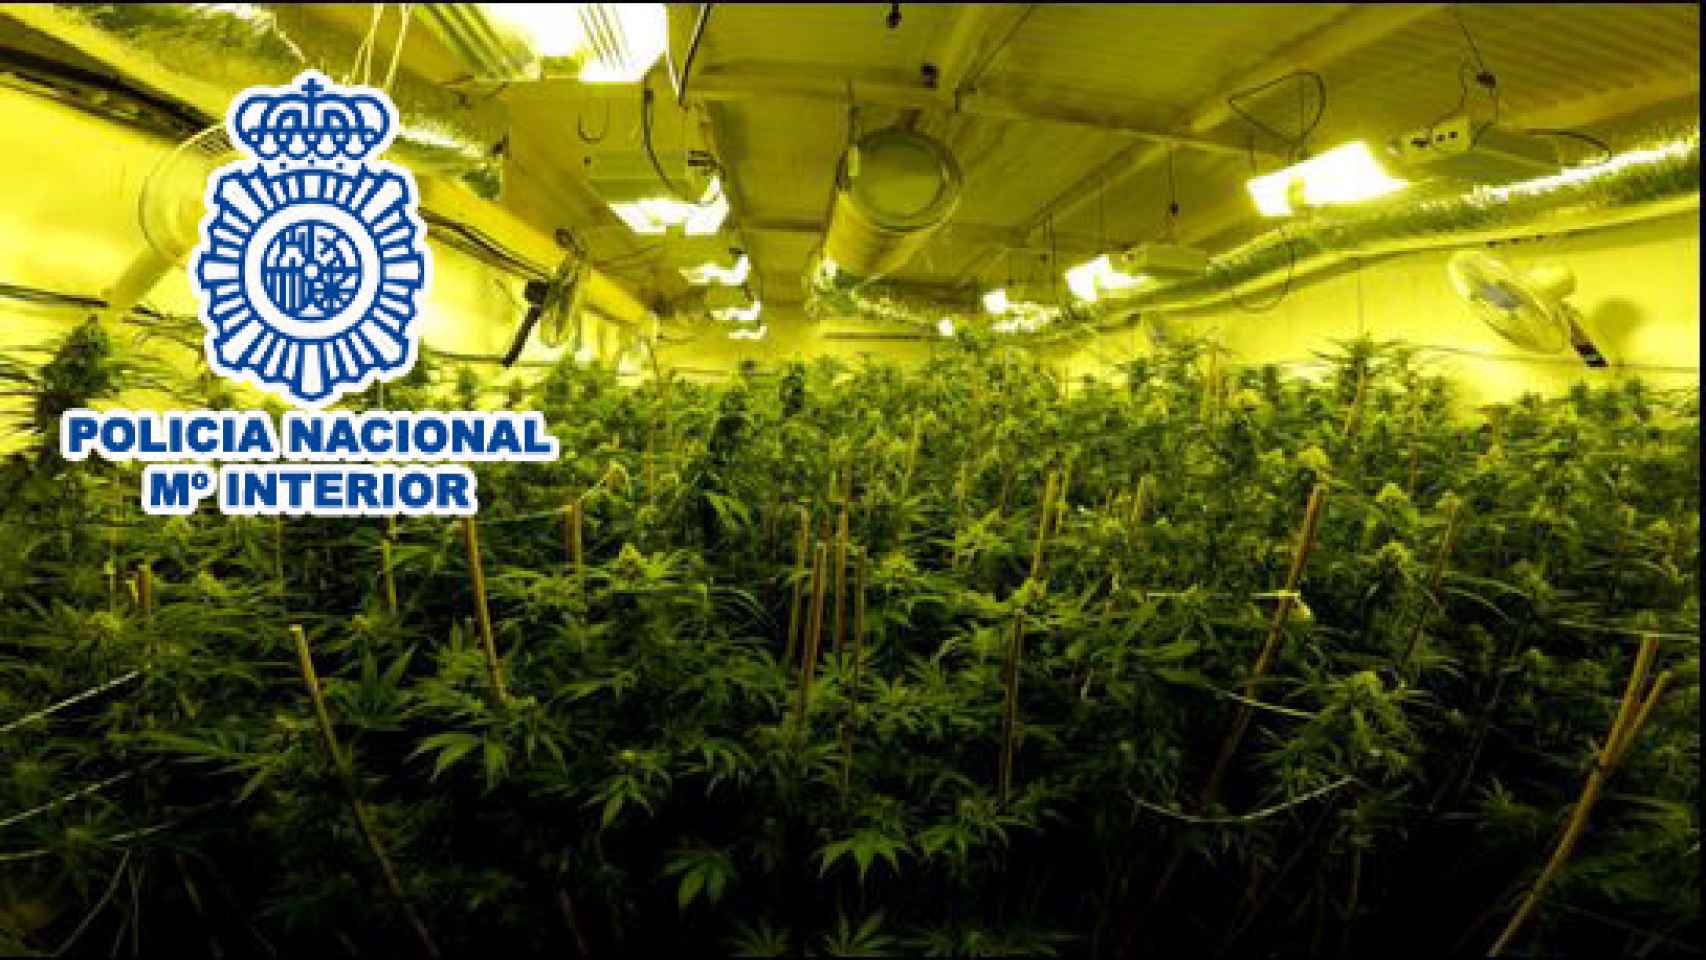 Imagen cedida por la Policía de la plantación de marihuana incautada en Elda.